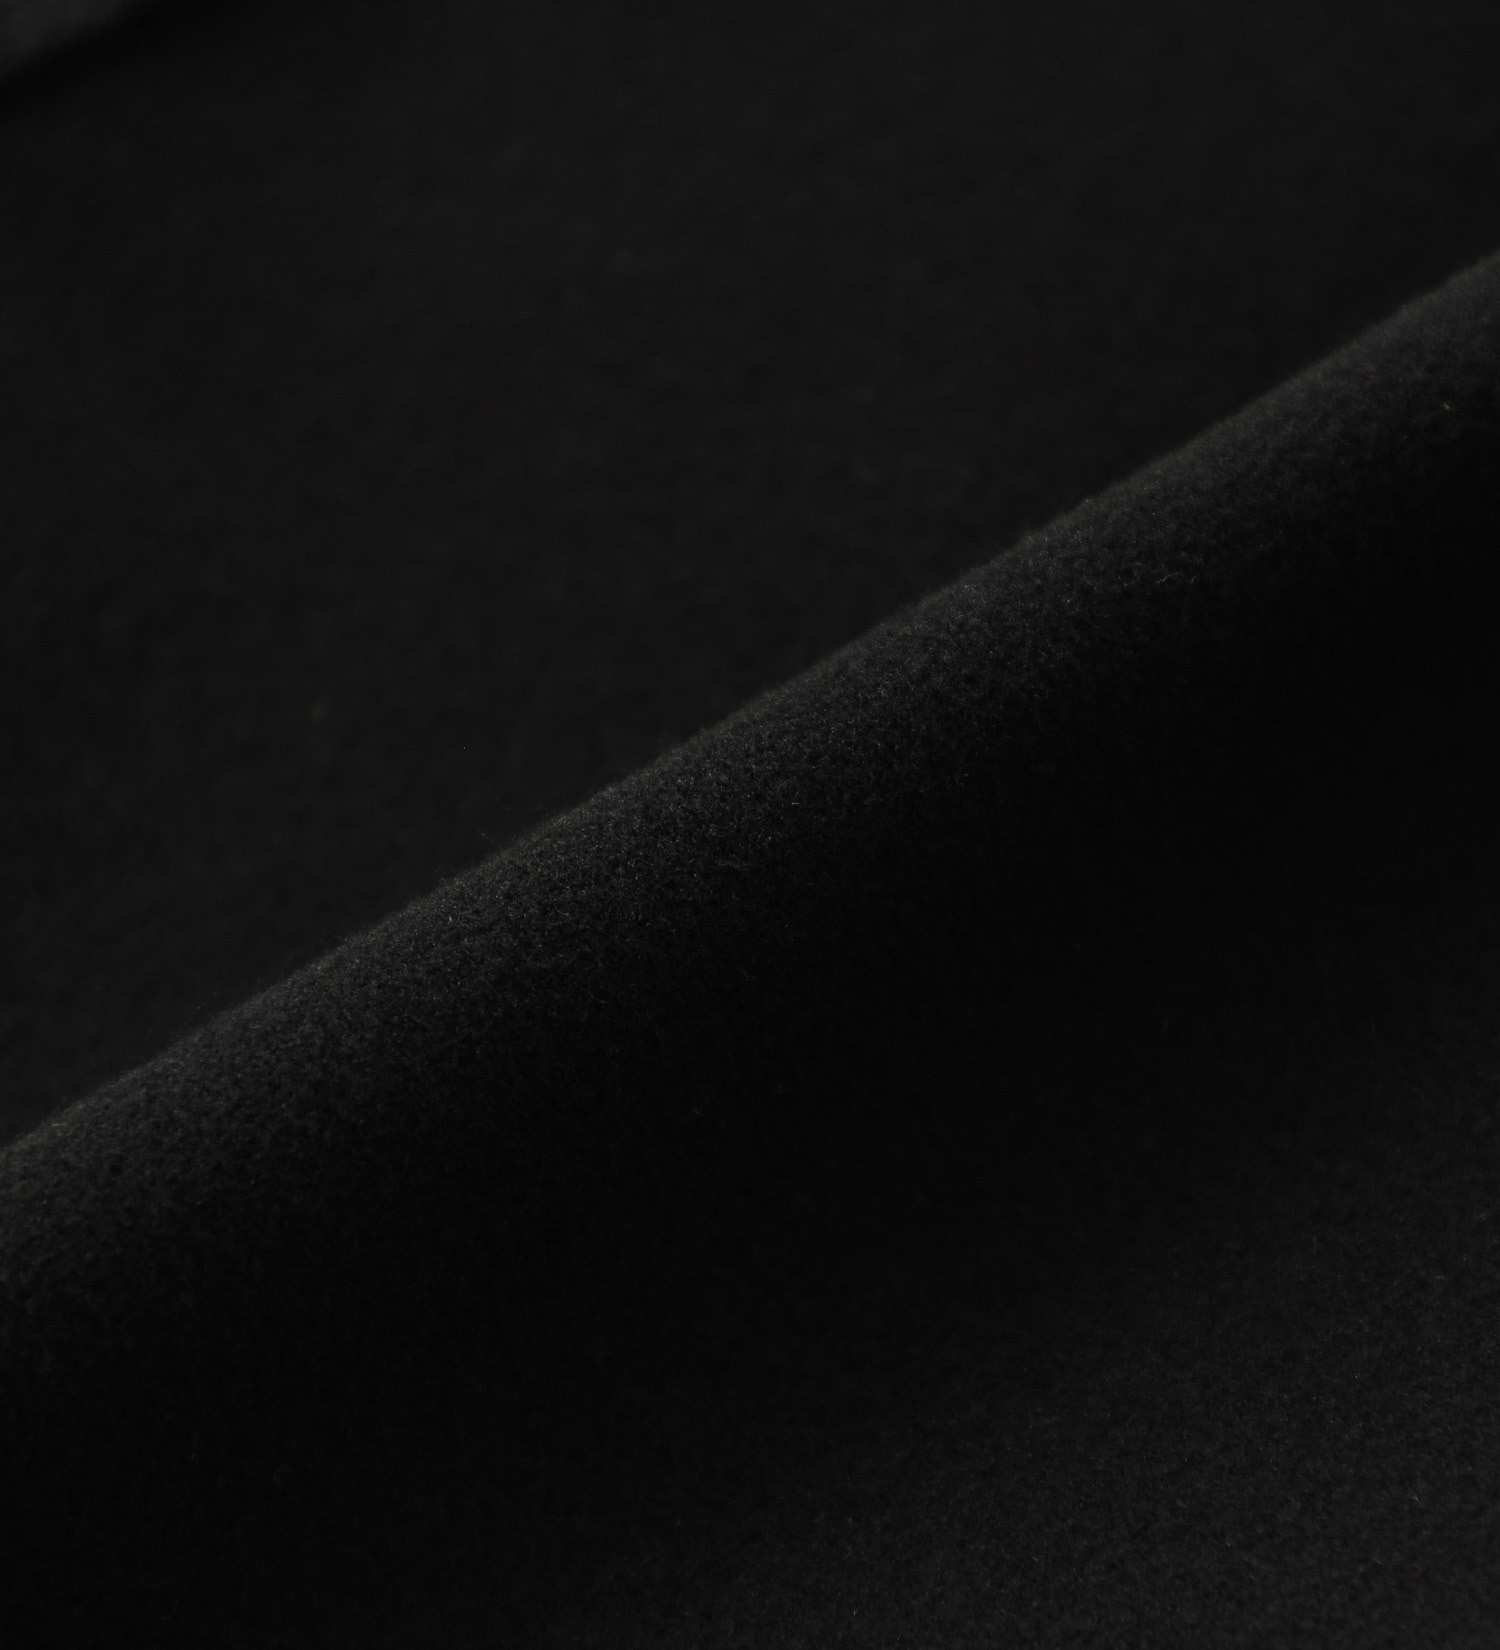 EDWIN(エドウイン)の【カート割】【SALE】2層で暖かい EDWIN インターナショナルベーシック レギュラーストレートパンツ403 WILD FIRE 2層ボンディング構造 【暖】|パンツ/パンツ/メンズ|ブラック